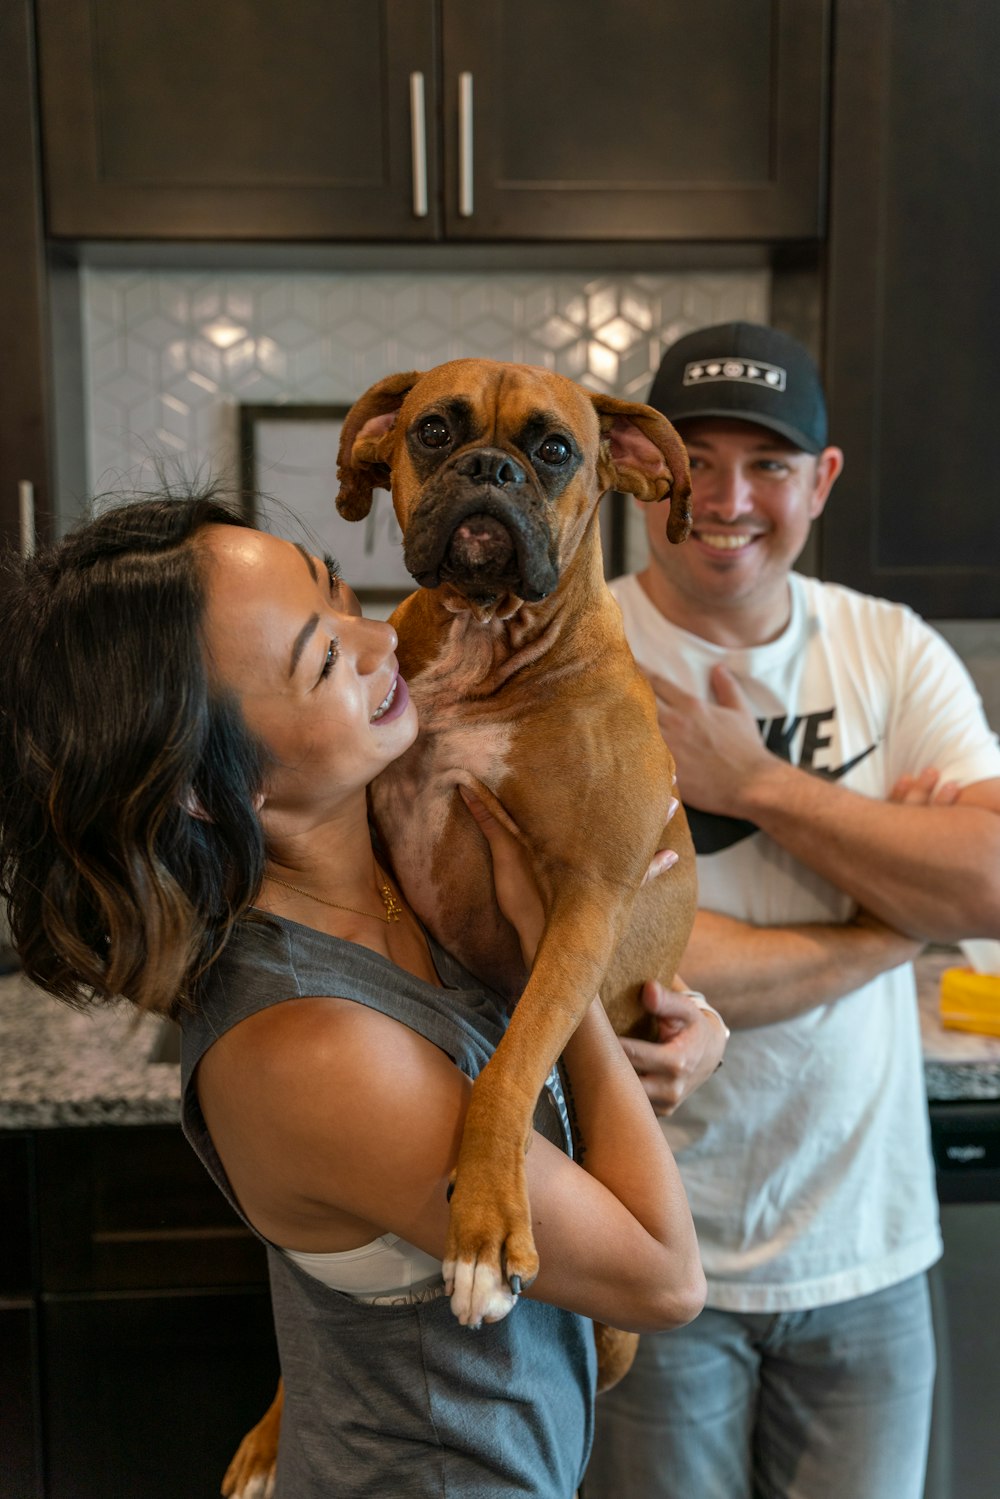 Ein Mann und eine Frau halten einen Hund in einer Küche